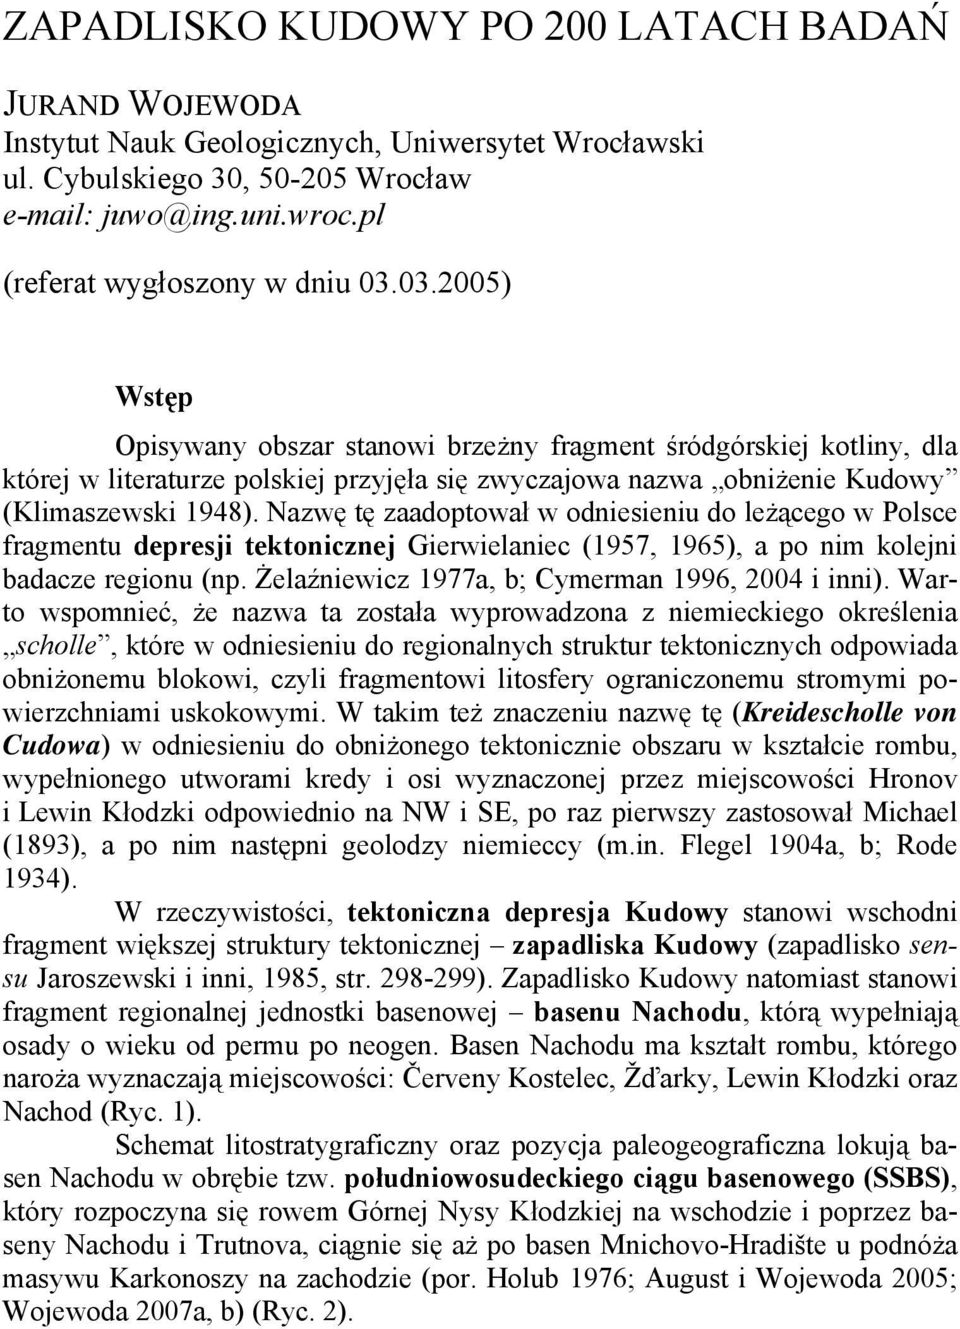 Nazwę tę zaadoptował w odniesieniu do leżącego w Polsce fragmentu depresji tektonicznej Gierwielaniec (1957, 1965), a po nim kolejni badacze regionu (np.